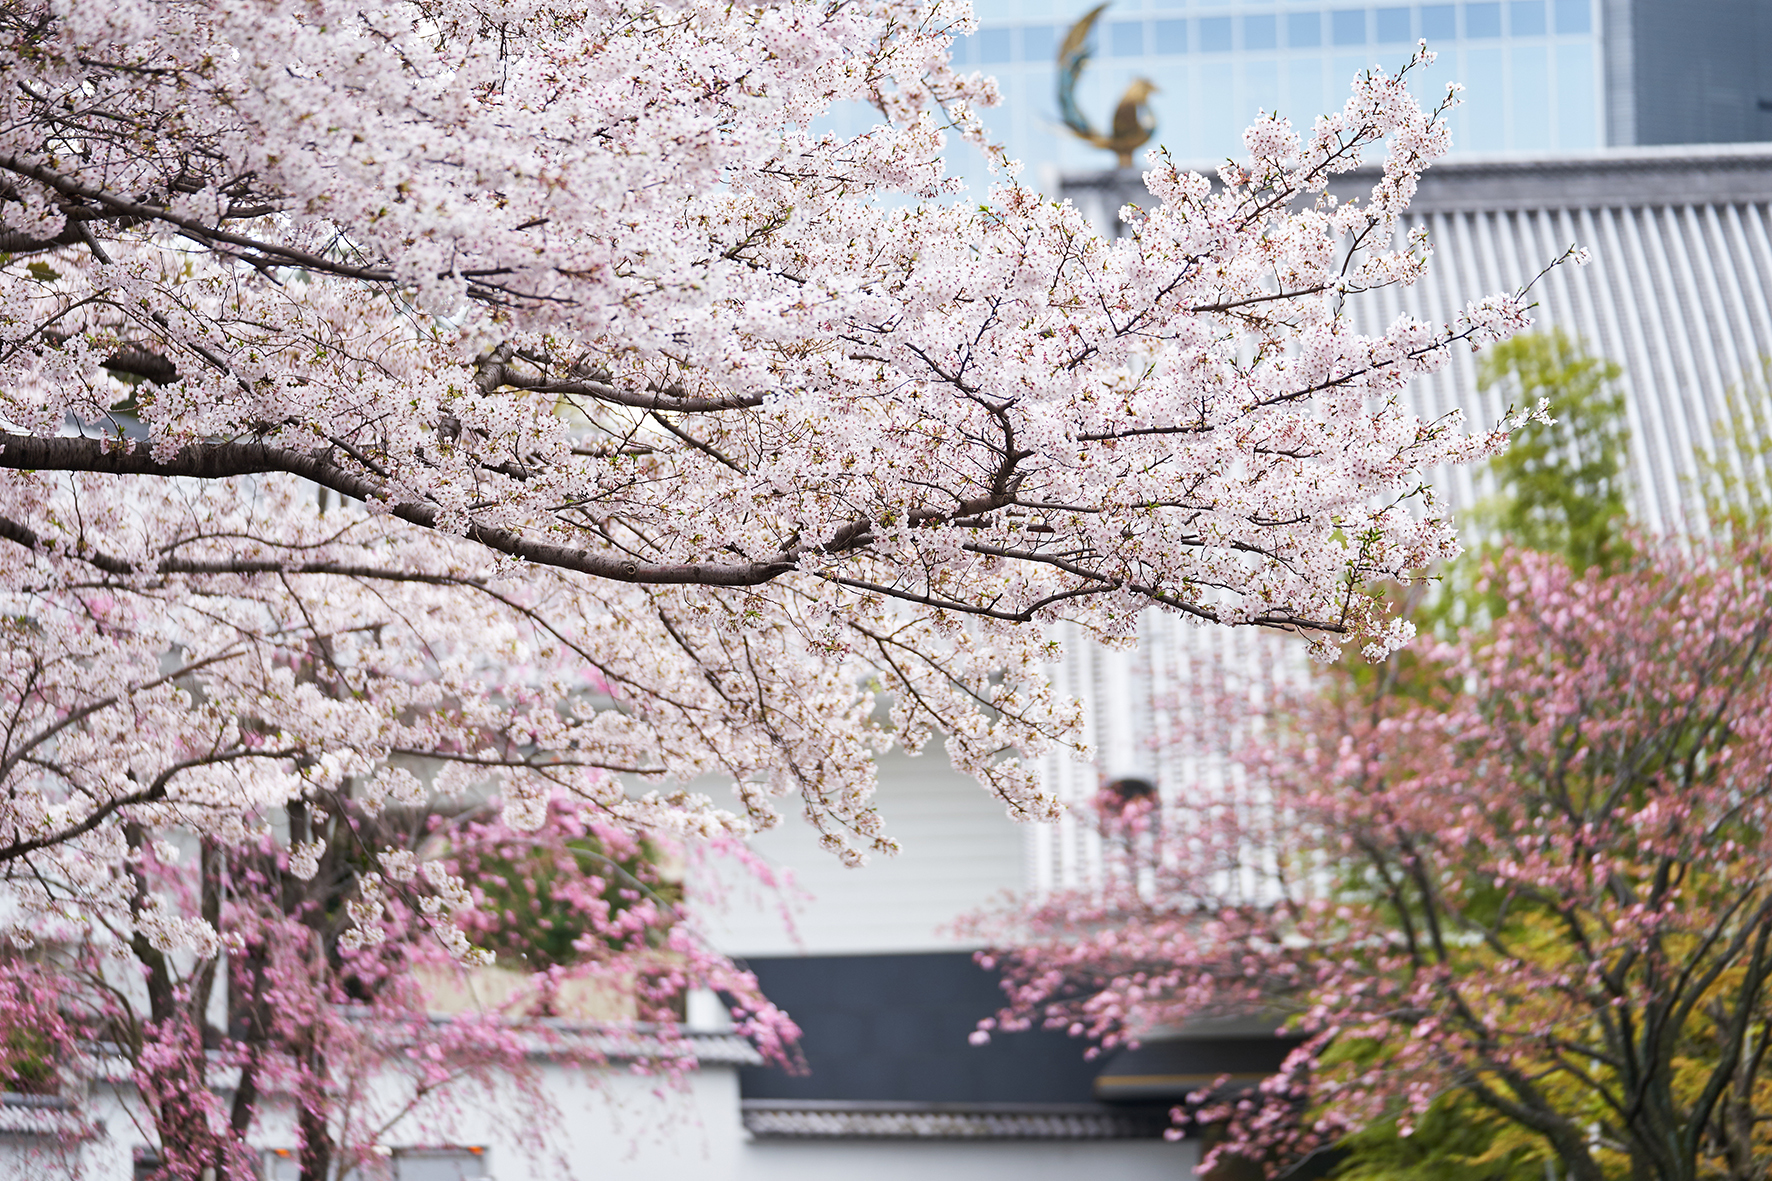 日本の国花 桜 を歴史と共に愛でる ホテル雅叙園東京の春は桜尽くし 五感で春を感じるさくらアートからグルメまで ホテル雅叙園東京の 桜のおもてなし 3月より開催 ホテル雅叙園東京のプレスリリース